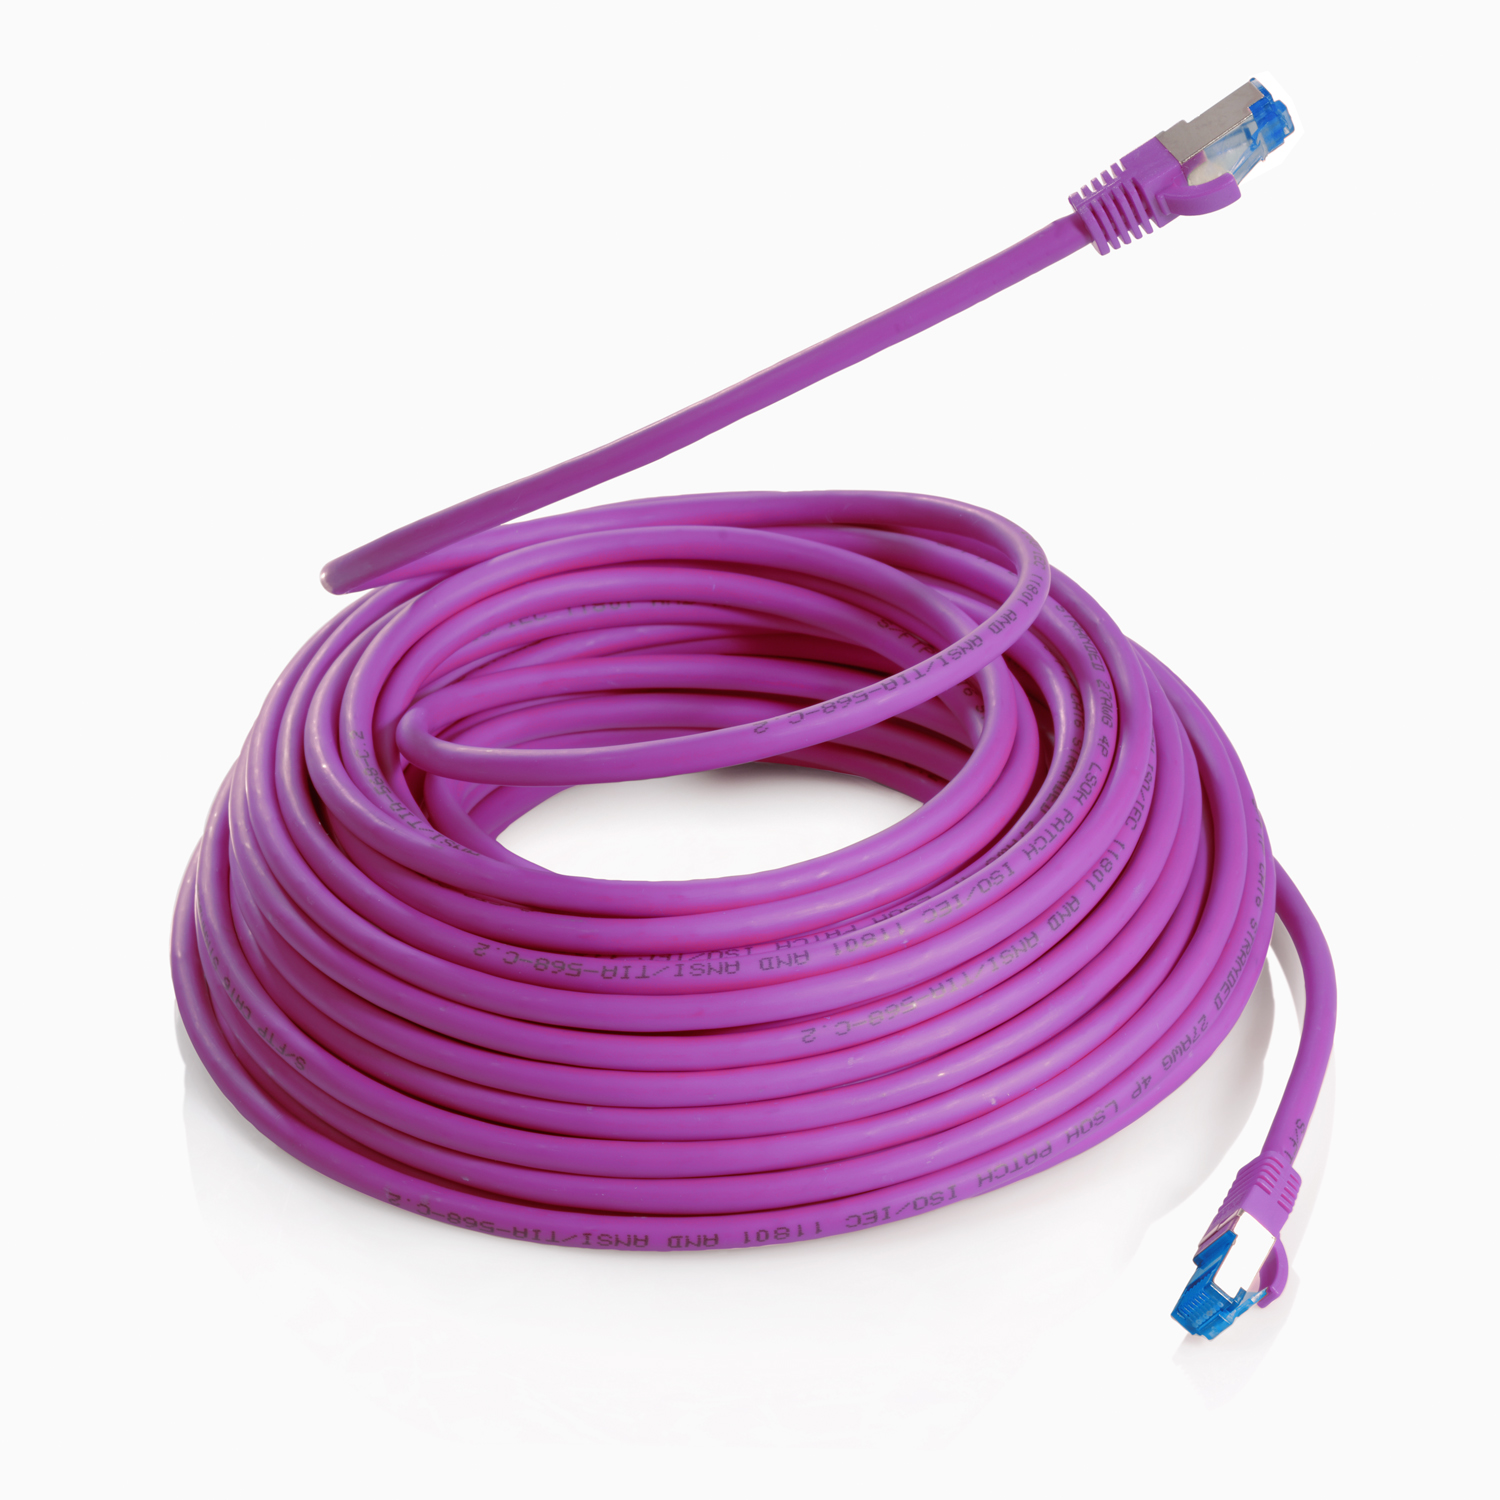 Netzwerkkabel S/FTP violett, Patchkabel m 10GBit, / TPFNET Netzwerkkabel, 10m 10